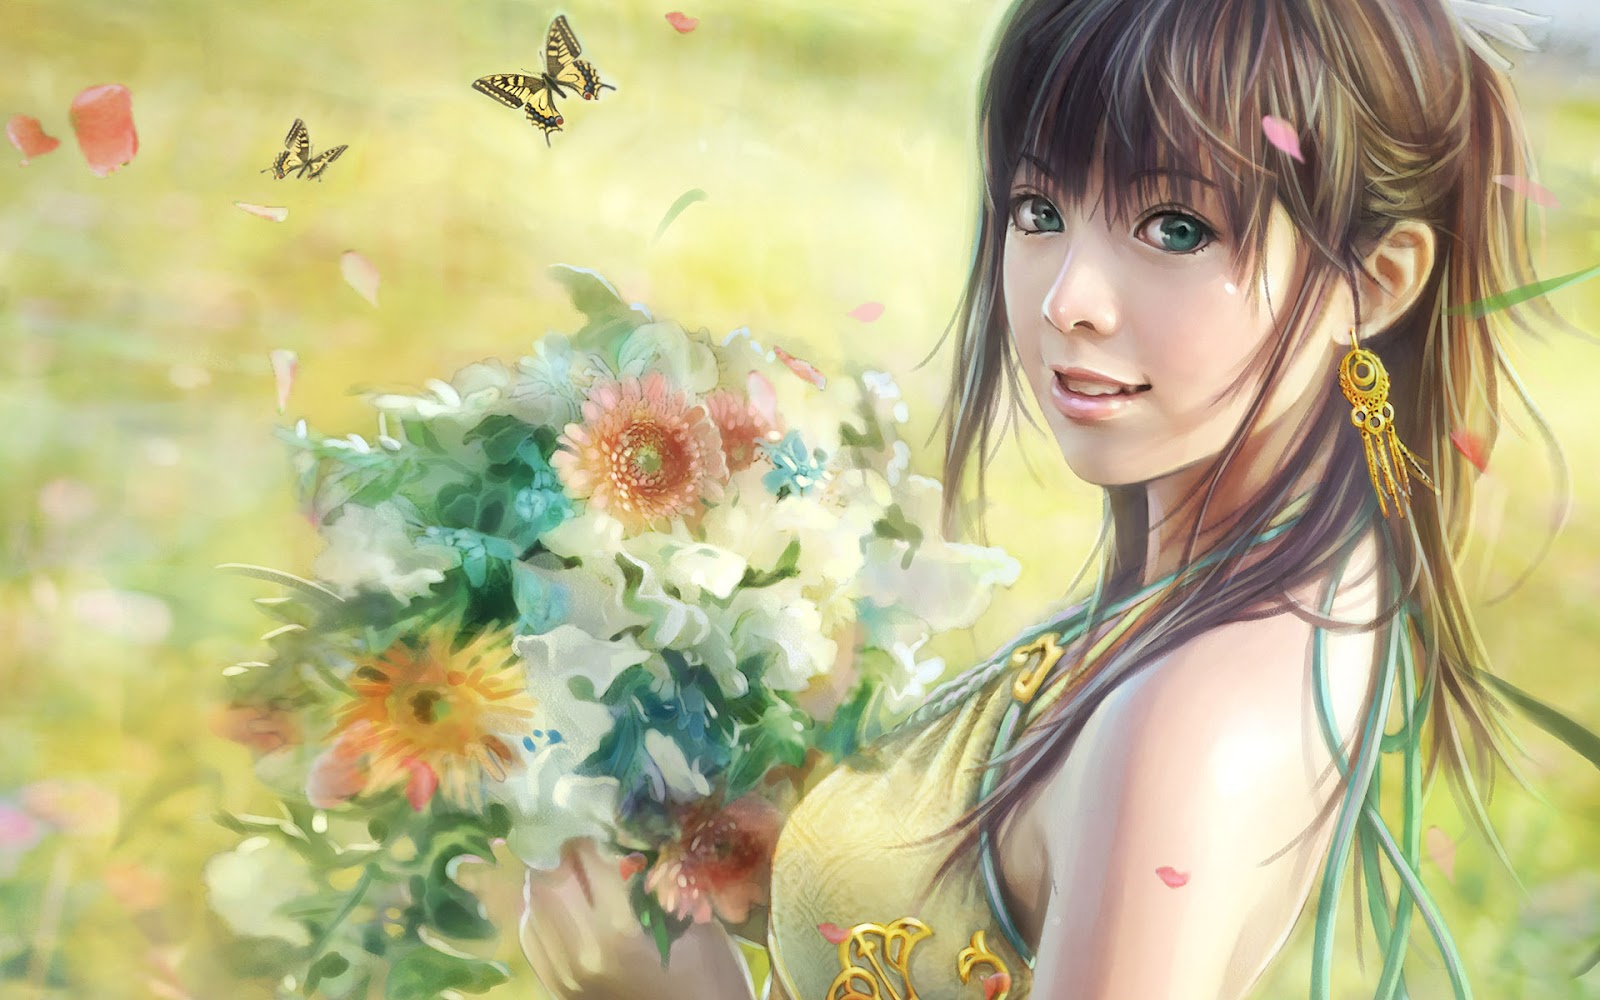 http://1.bp.blogspot.com/-jHxxp2qUedE/T8zAYI5Qs2I/AAAAAAAAHH4/e1K69_pqIRE/s1600/fantasy-girl-anime-cg-cute-flowers-girl-hd-japanese-pretty-widescreen.jpg